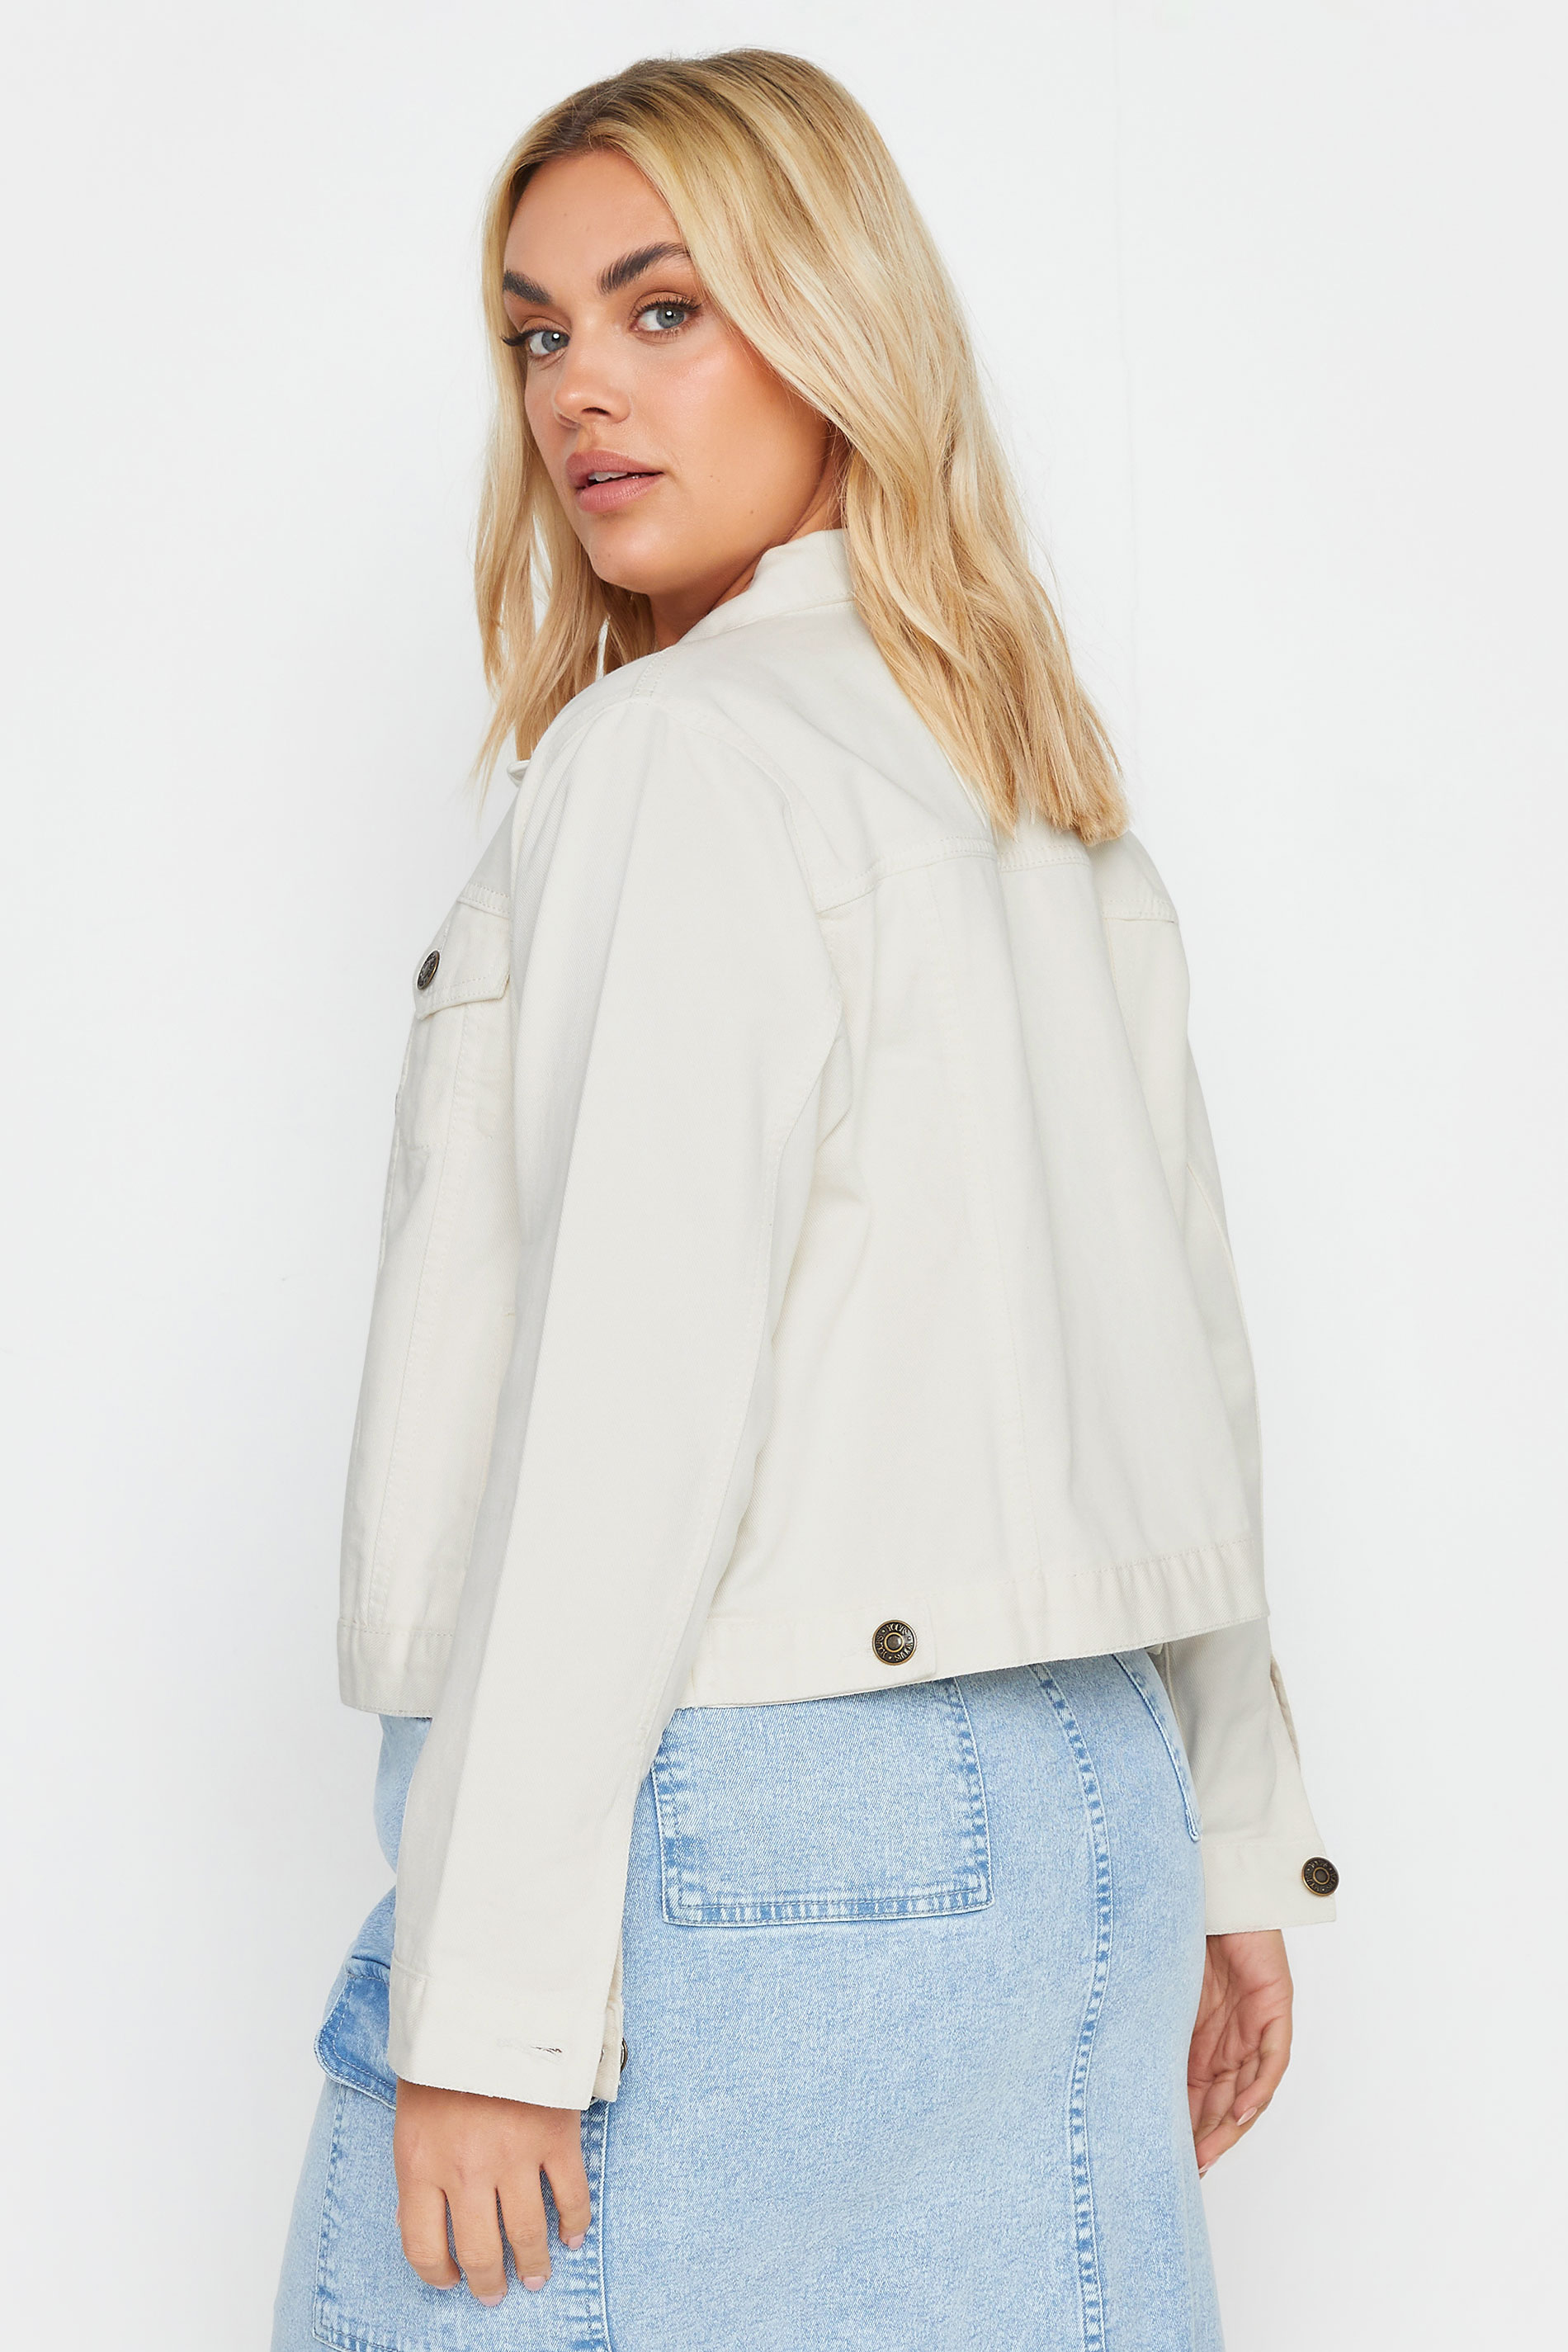 YOURS Plus Size Ivory White Denim Jacket | Yours Clothing 3